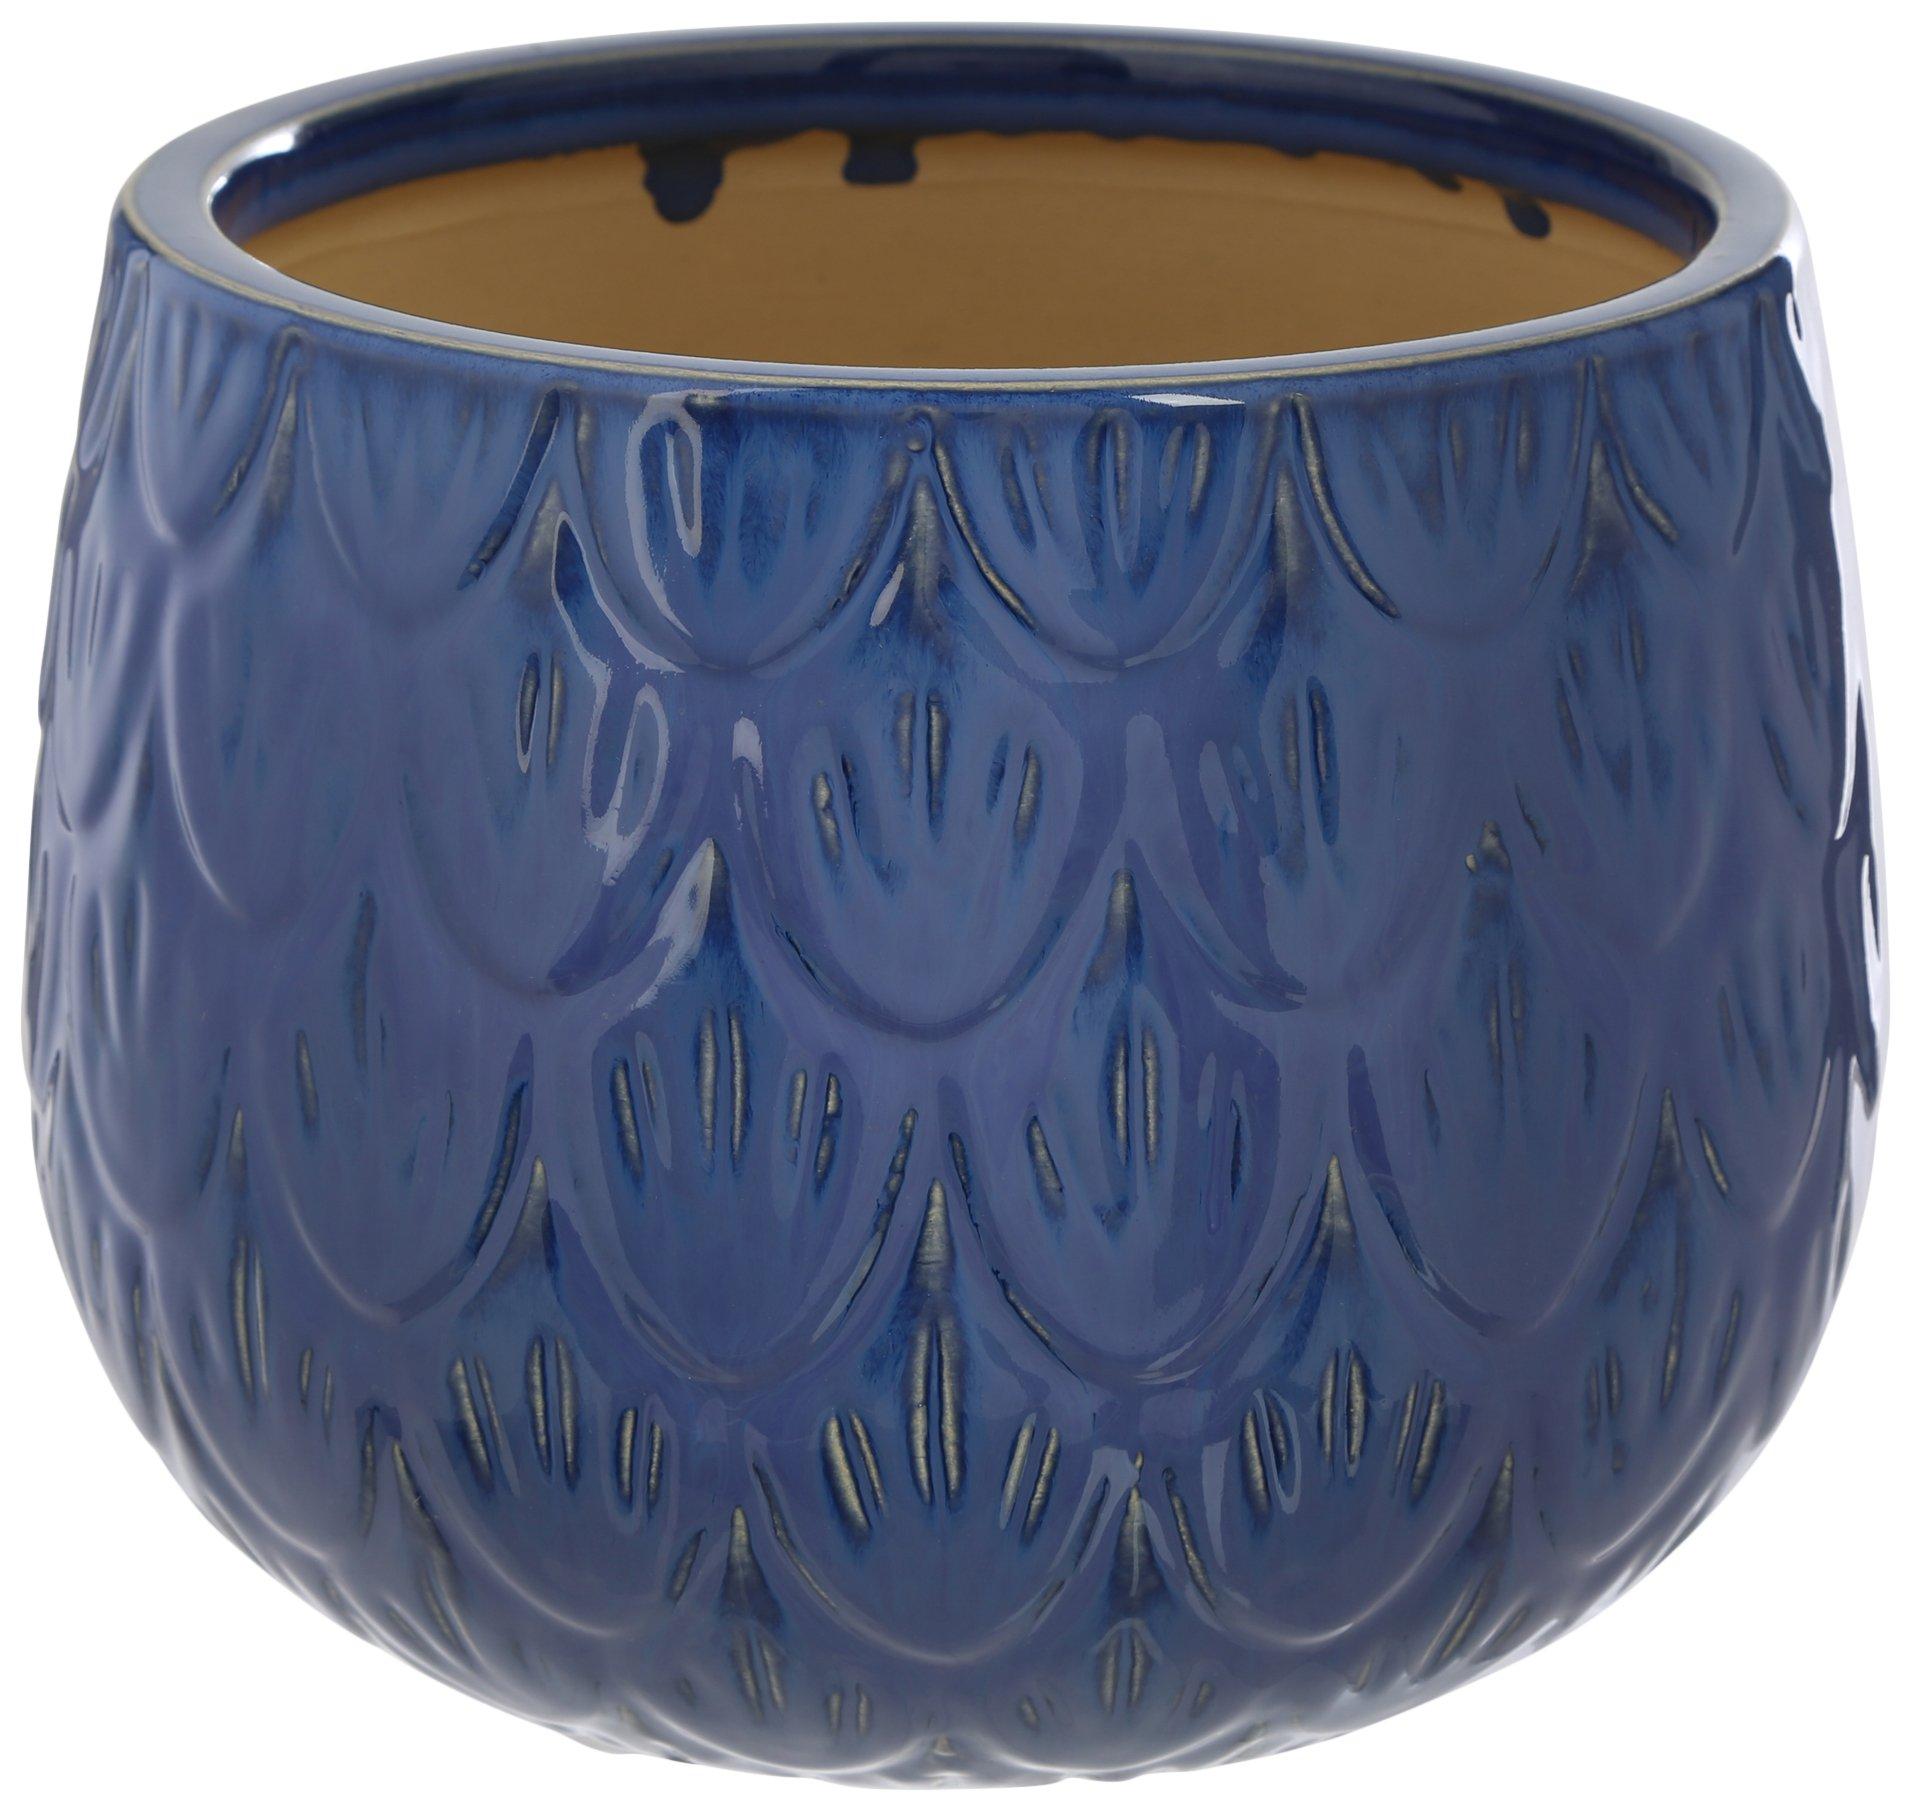 8in Painted Ceramic Planter Pot